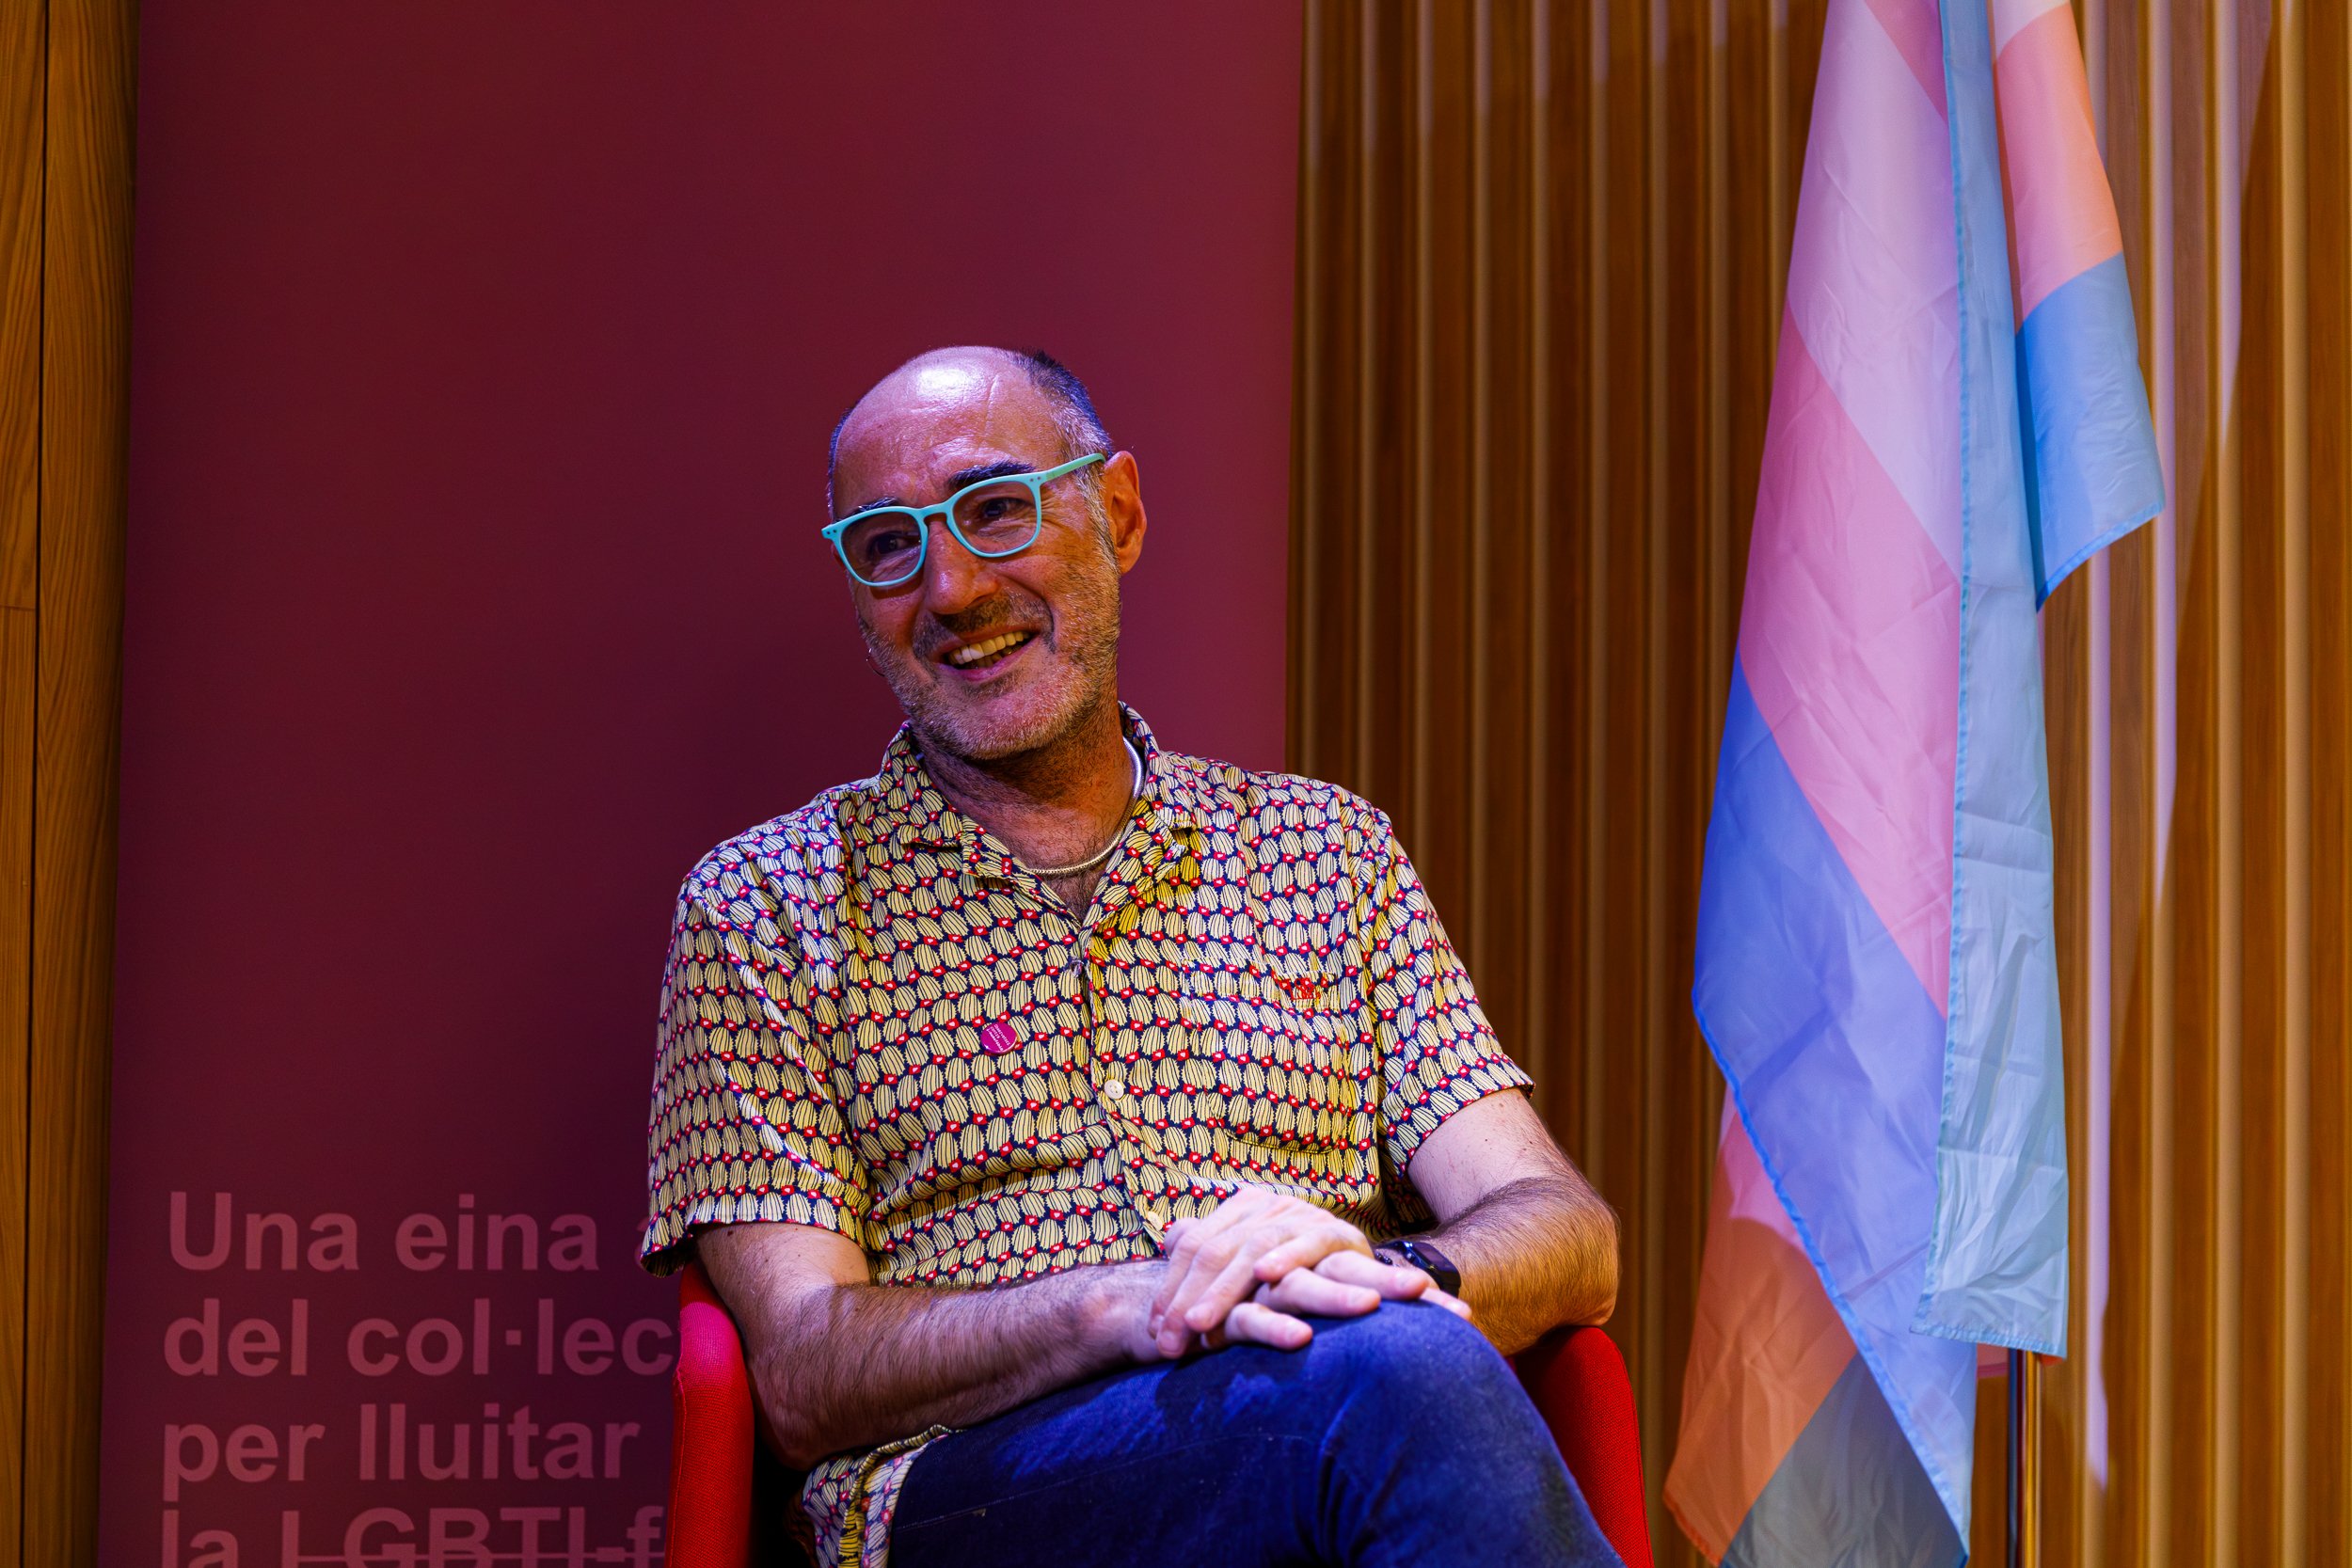 Observatori contra l'Homofòbia, davant el 23-J: "Els drets de les persones LGTBI no es poden discutir"